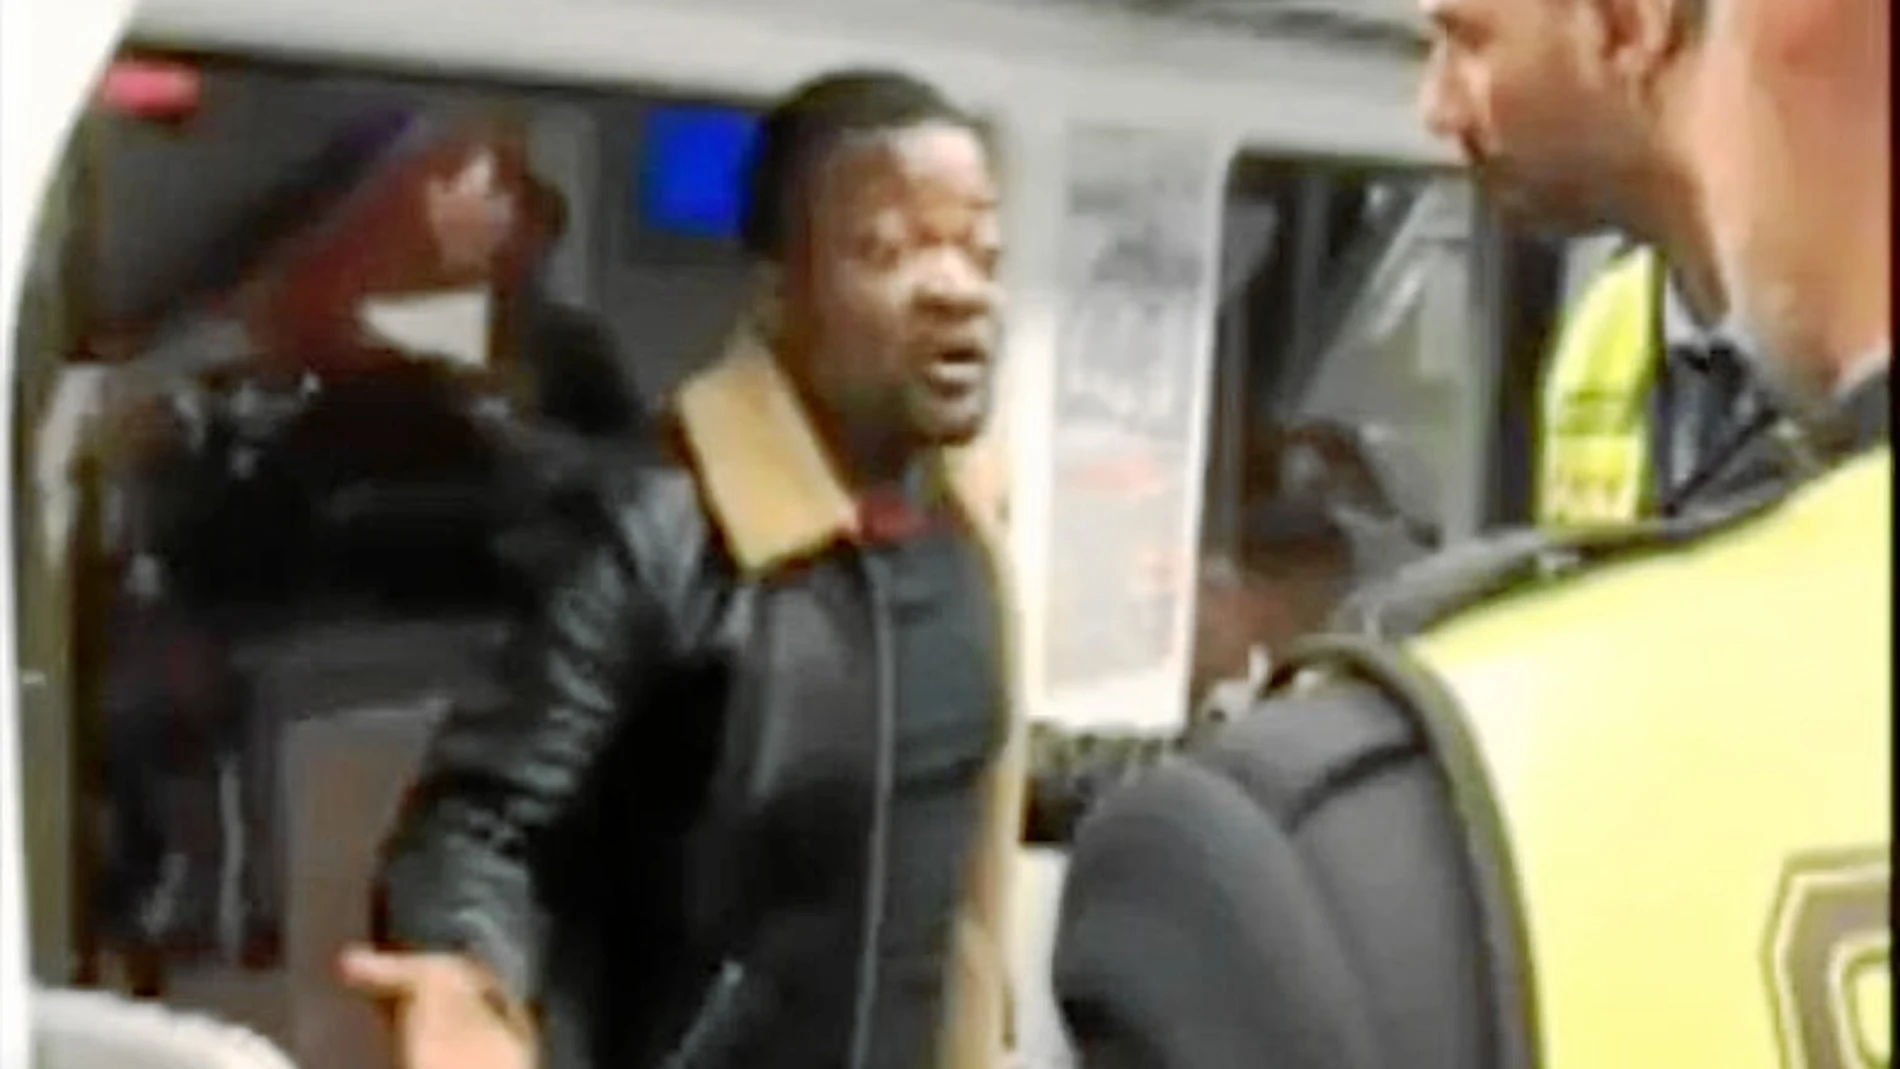 Un viajero grabó la escena en la que los vigilantes de seguridad exigen el billete a un hombre de color que fue reducido por los agentes de seguridad en la estación de Atocha